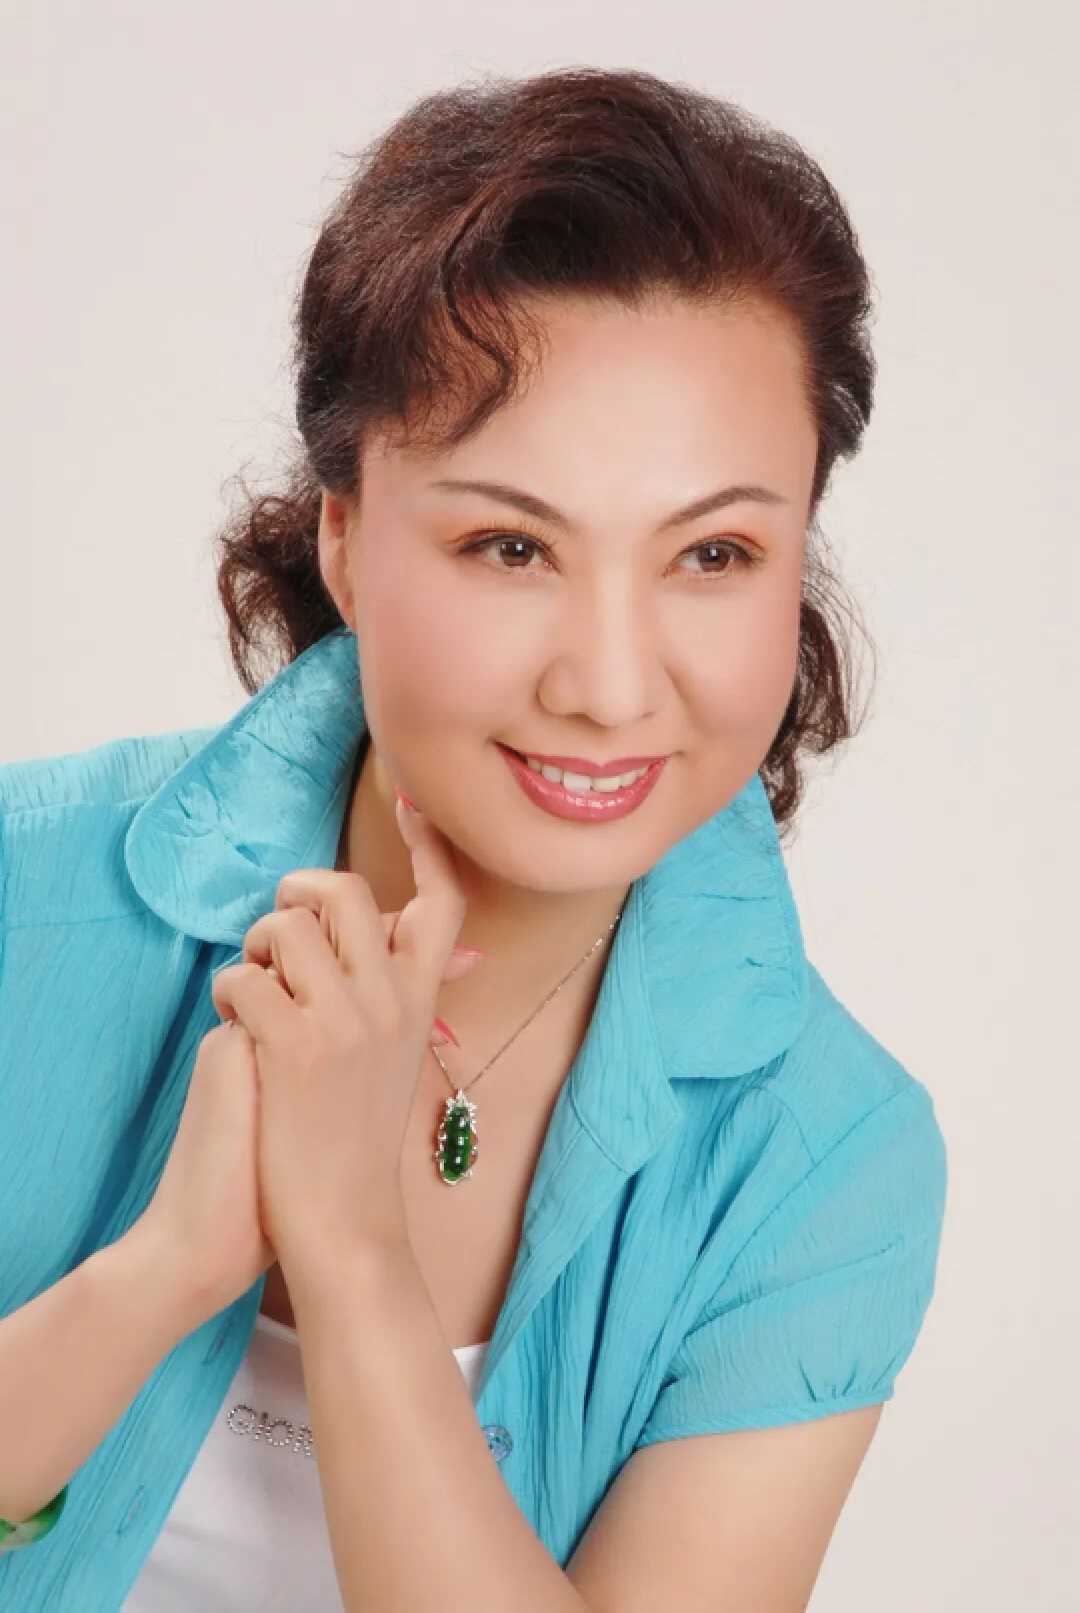 中国京剧女演员,当代张派名家,中国戏剧梅花奖的获得者,北京京剧院一